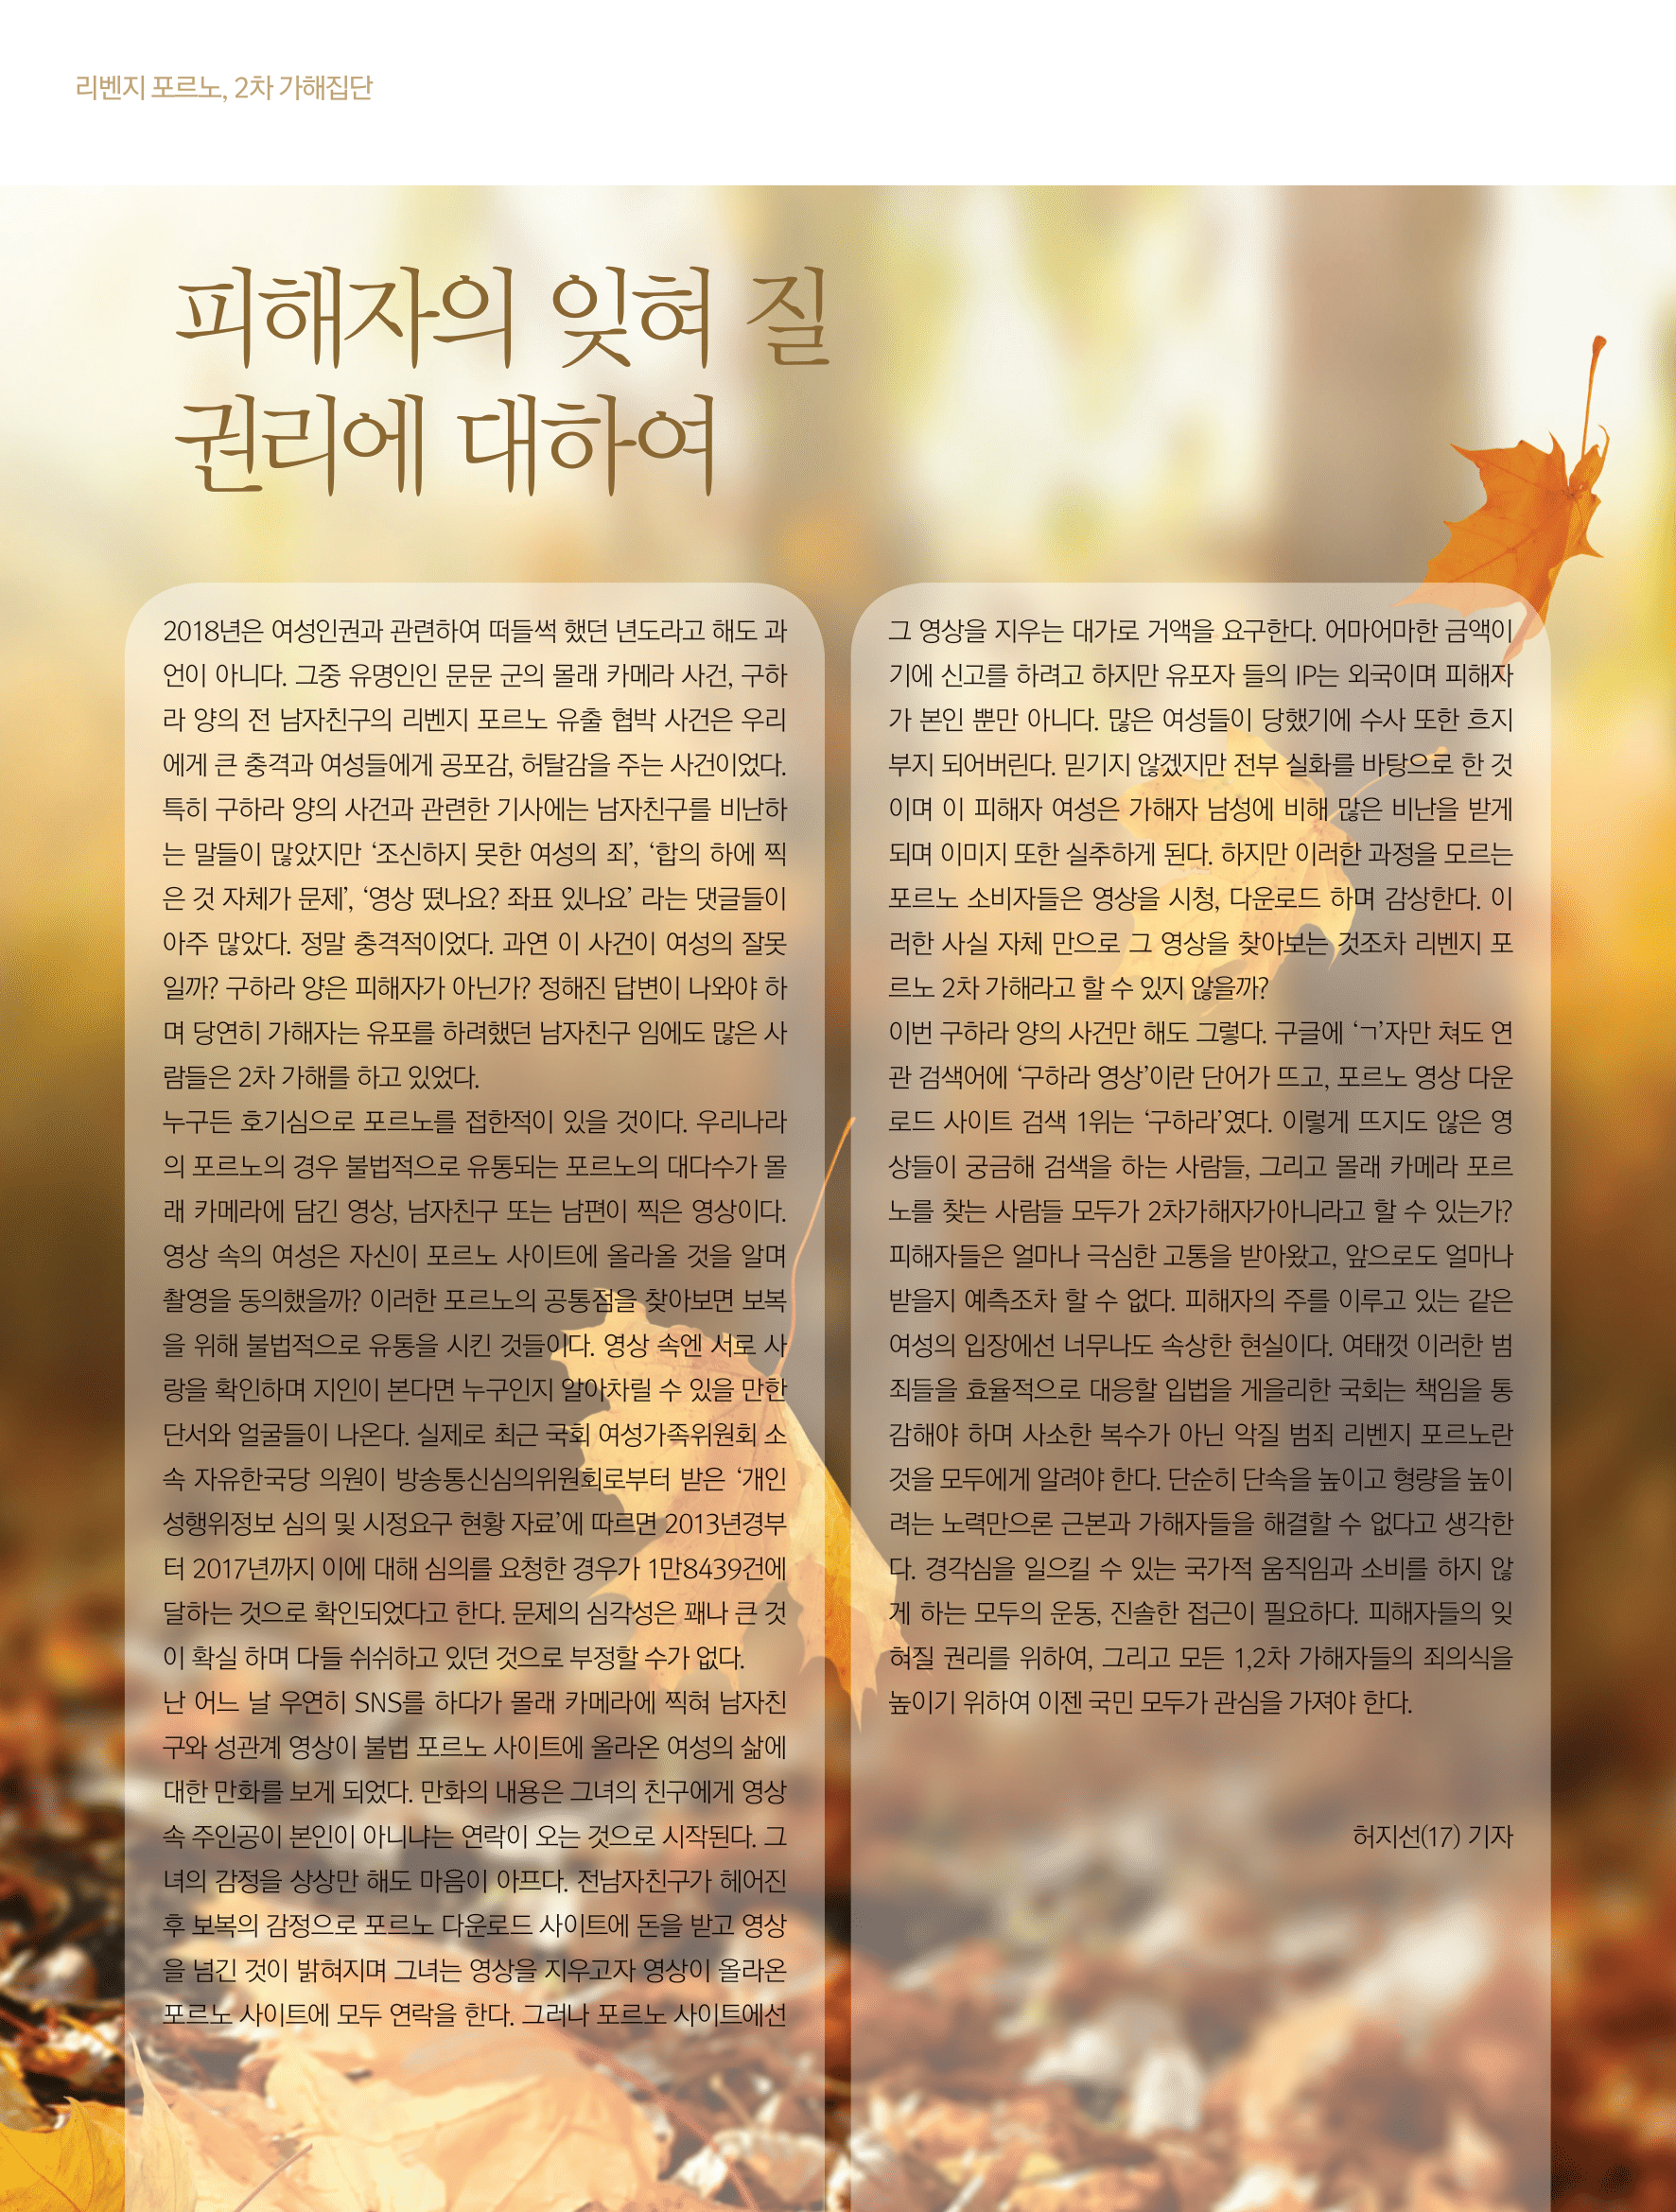 뜻새김 신문 72호 26